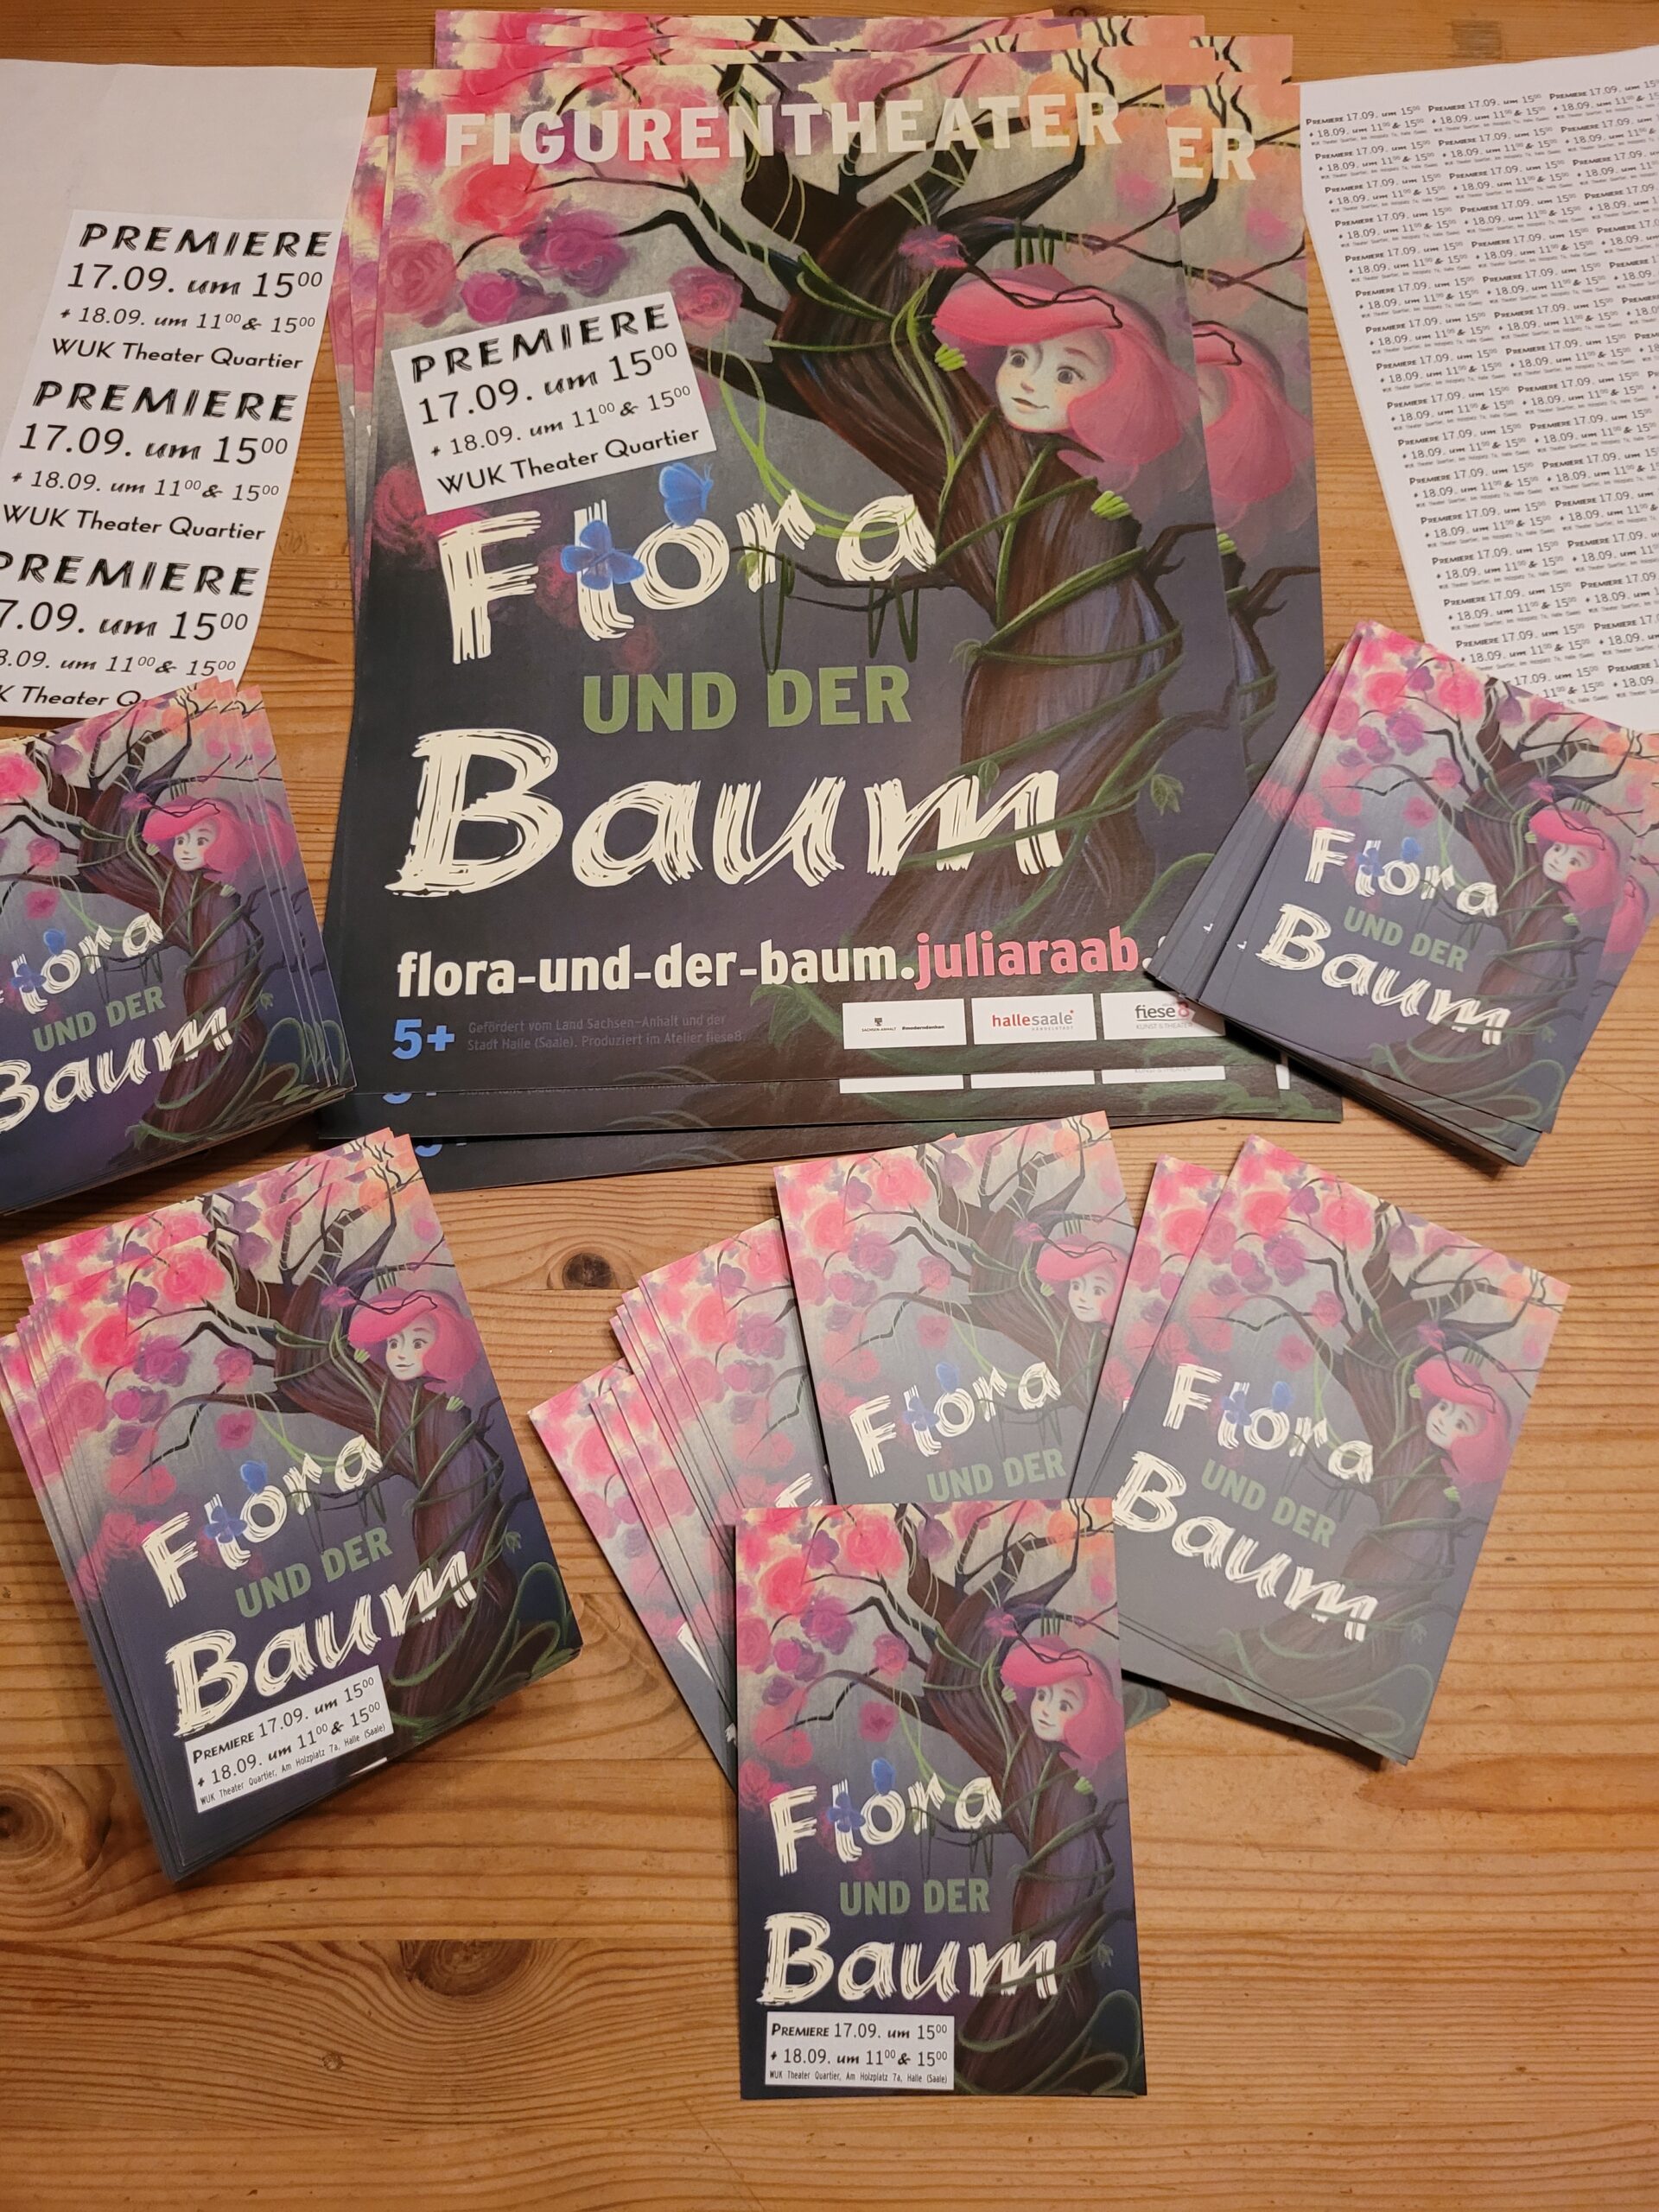 Etikettierte Plakate und Postkarten für die Figurentheaterproduktion "Flora und der Baum" von und mit Figurenspielerin Julia Raab